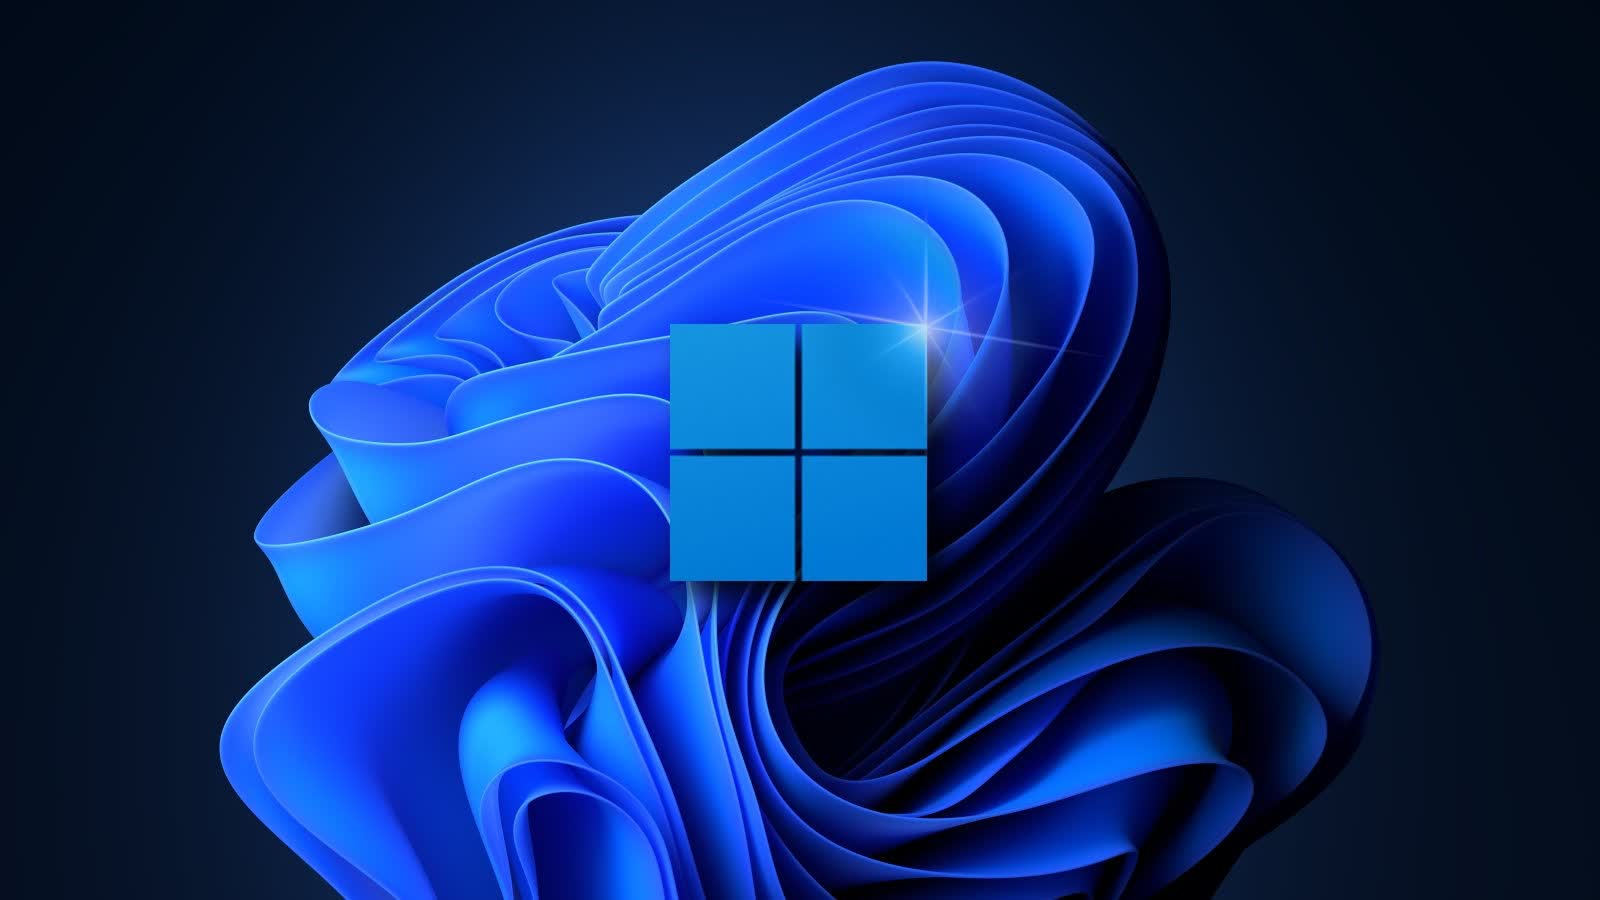 Microsoft made calmer system sounds for Windows 11 dark mode